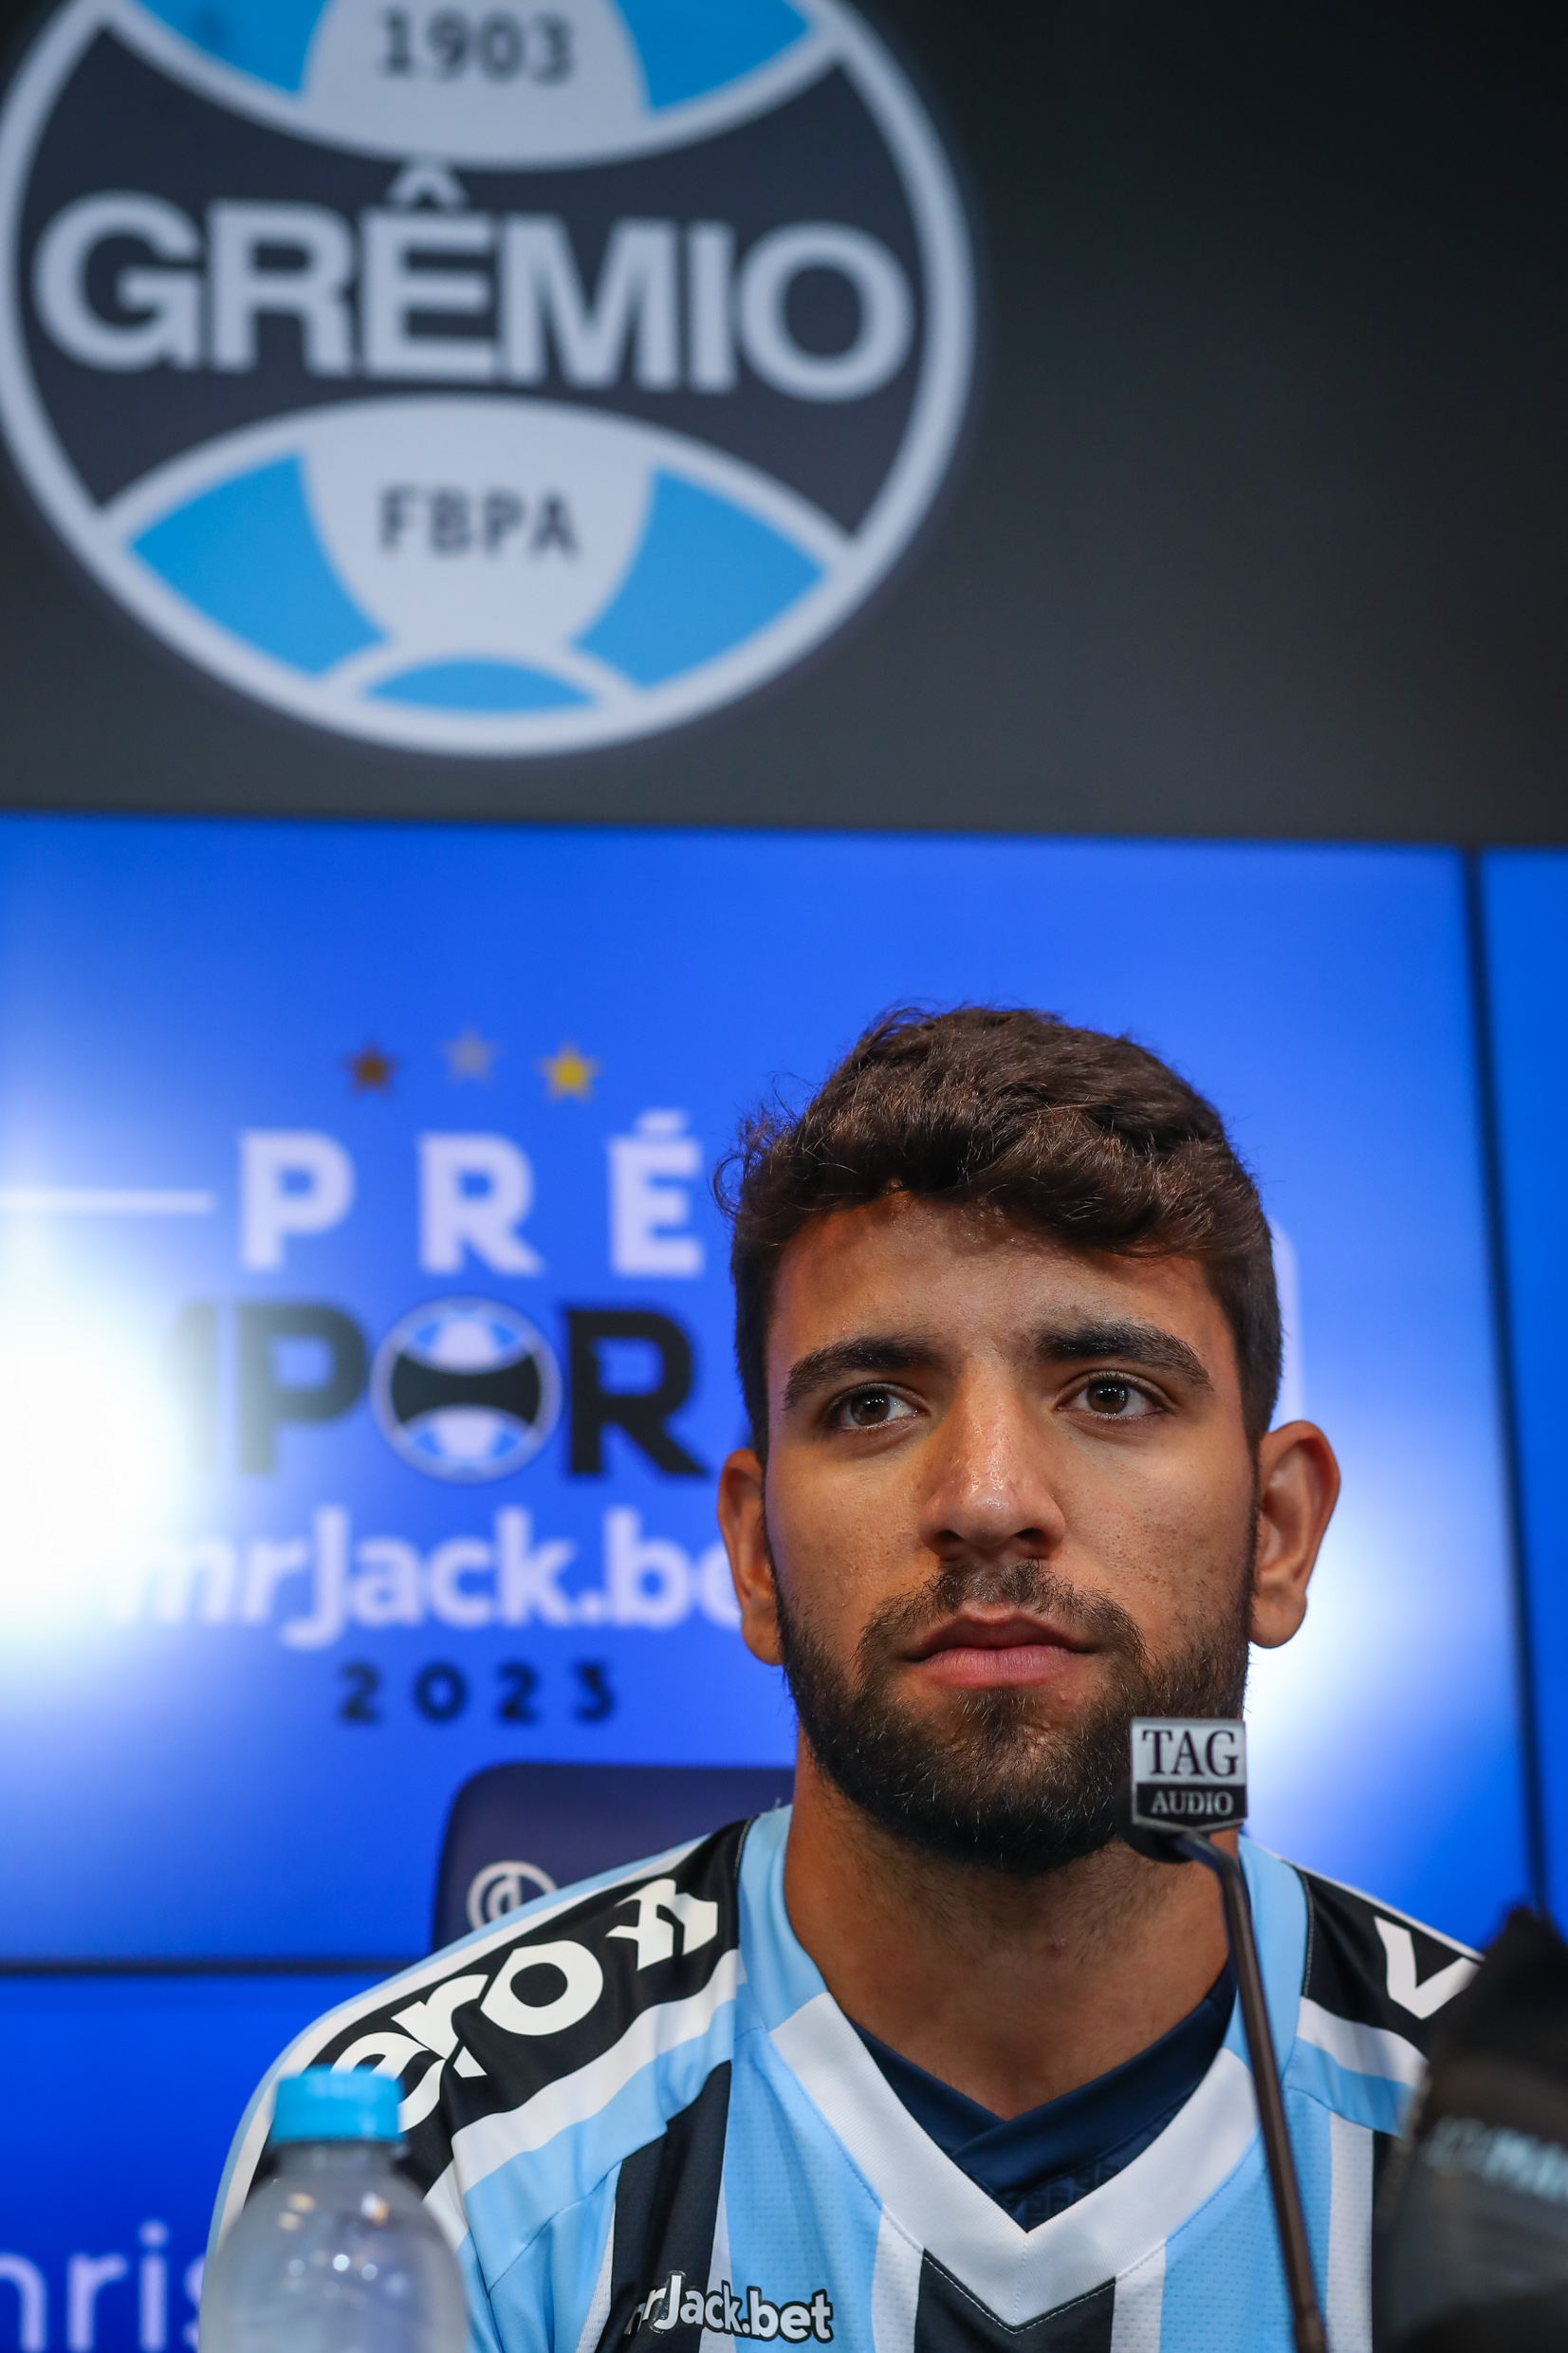 Torcida revoltada: Pepê ‘decepciona geral’ e seu futuro no Grêmio é contestado